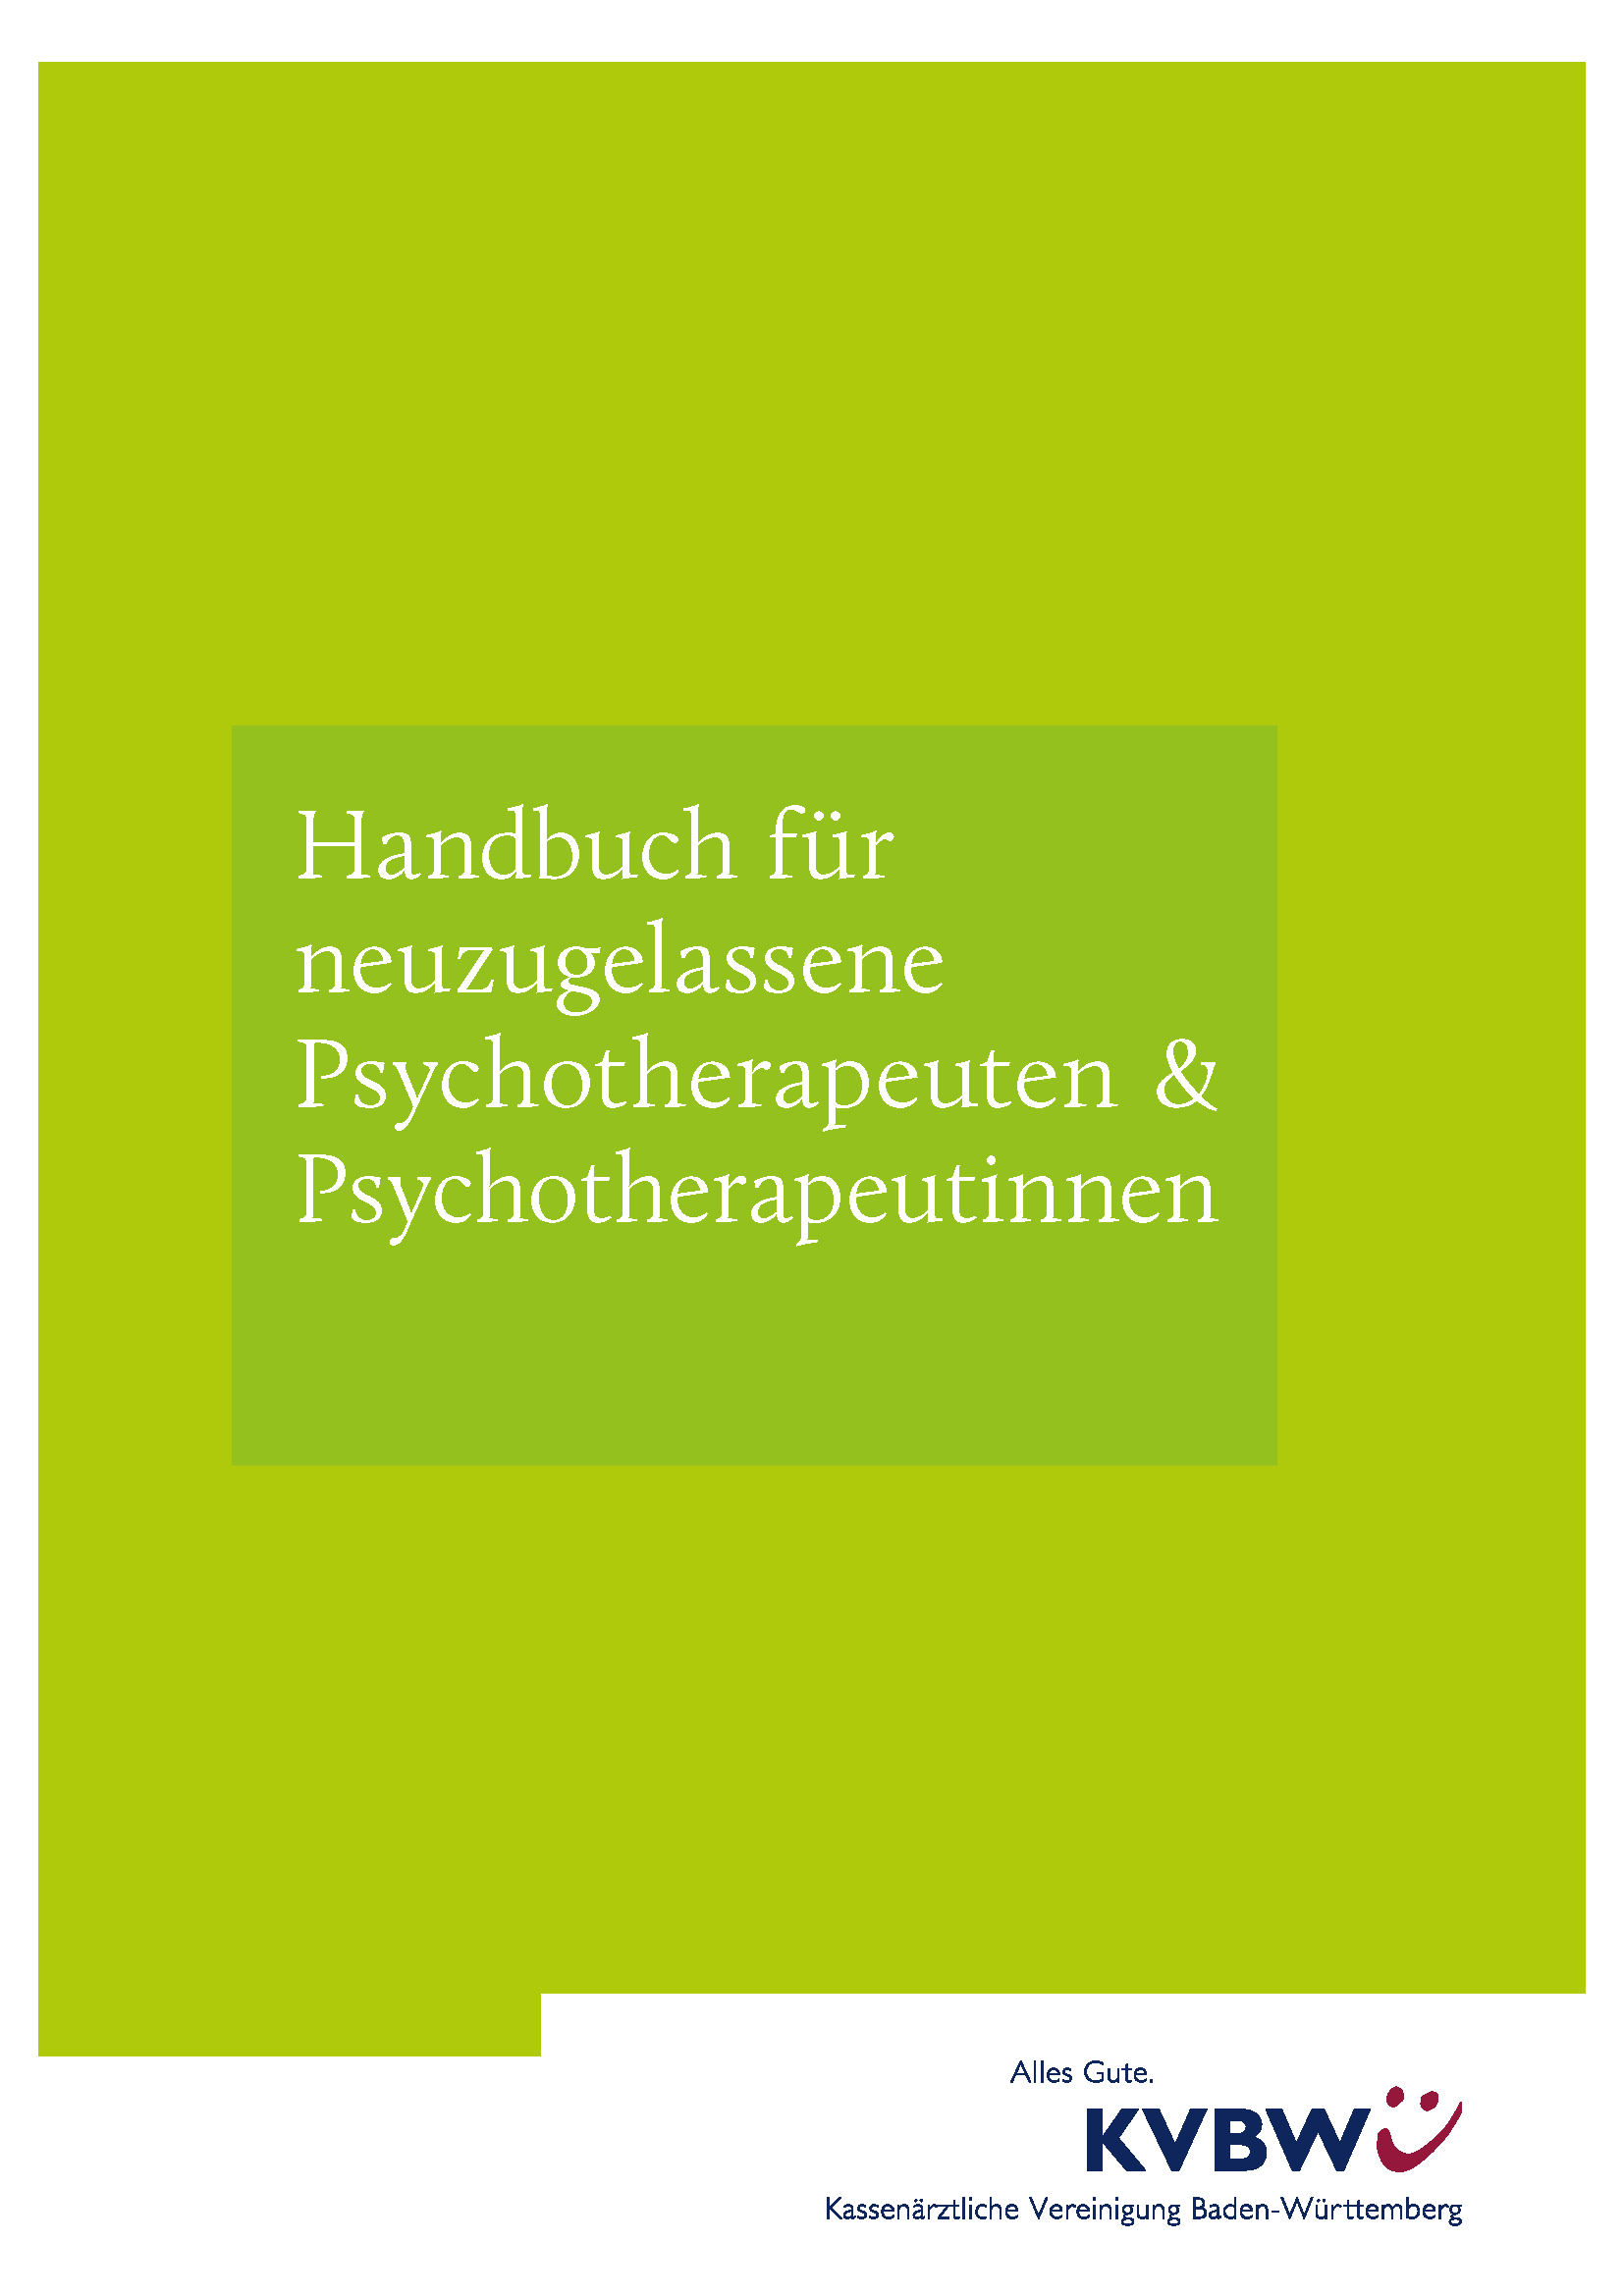 Titelblatt der Abrechnungsbroschüre für neue psychotherapeutische KVBW-Mitglieder